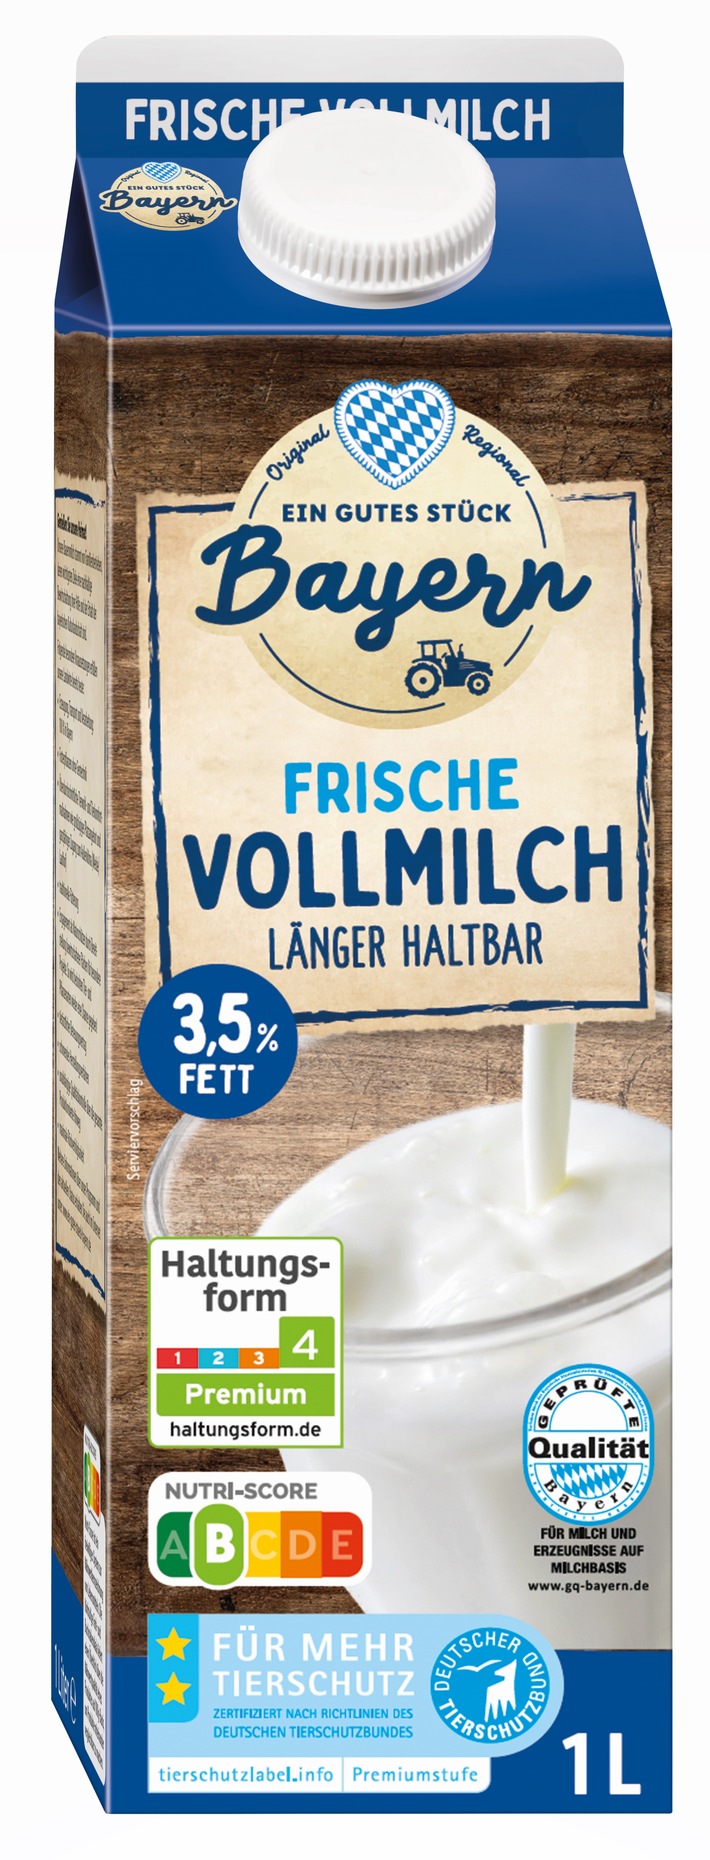 &quot;Ein gutes Stück Bayern&quot;-Milch von Lidl wird klimaeffizient / Lidl fördert bayerische Landwirte bei der Einsparung produktbezogener Treibhausgasemissionen